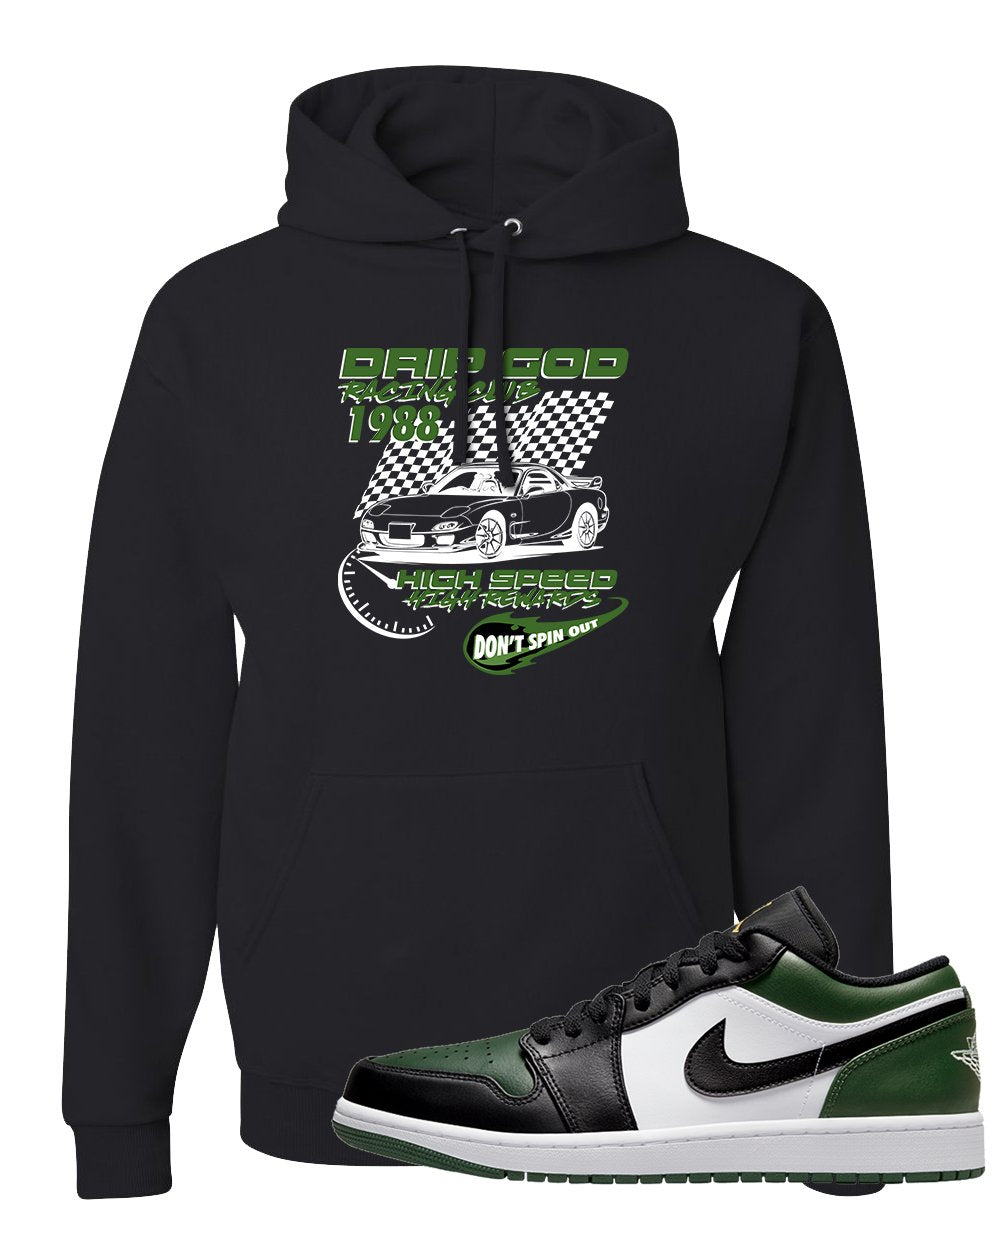 Green Toe Low 1s Hoodie | Drip God Racing Club, Black